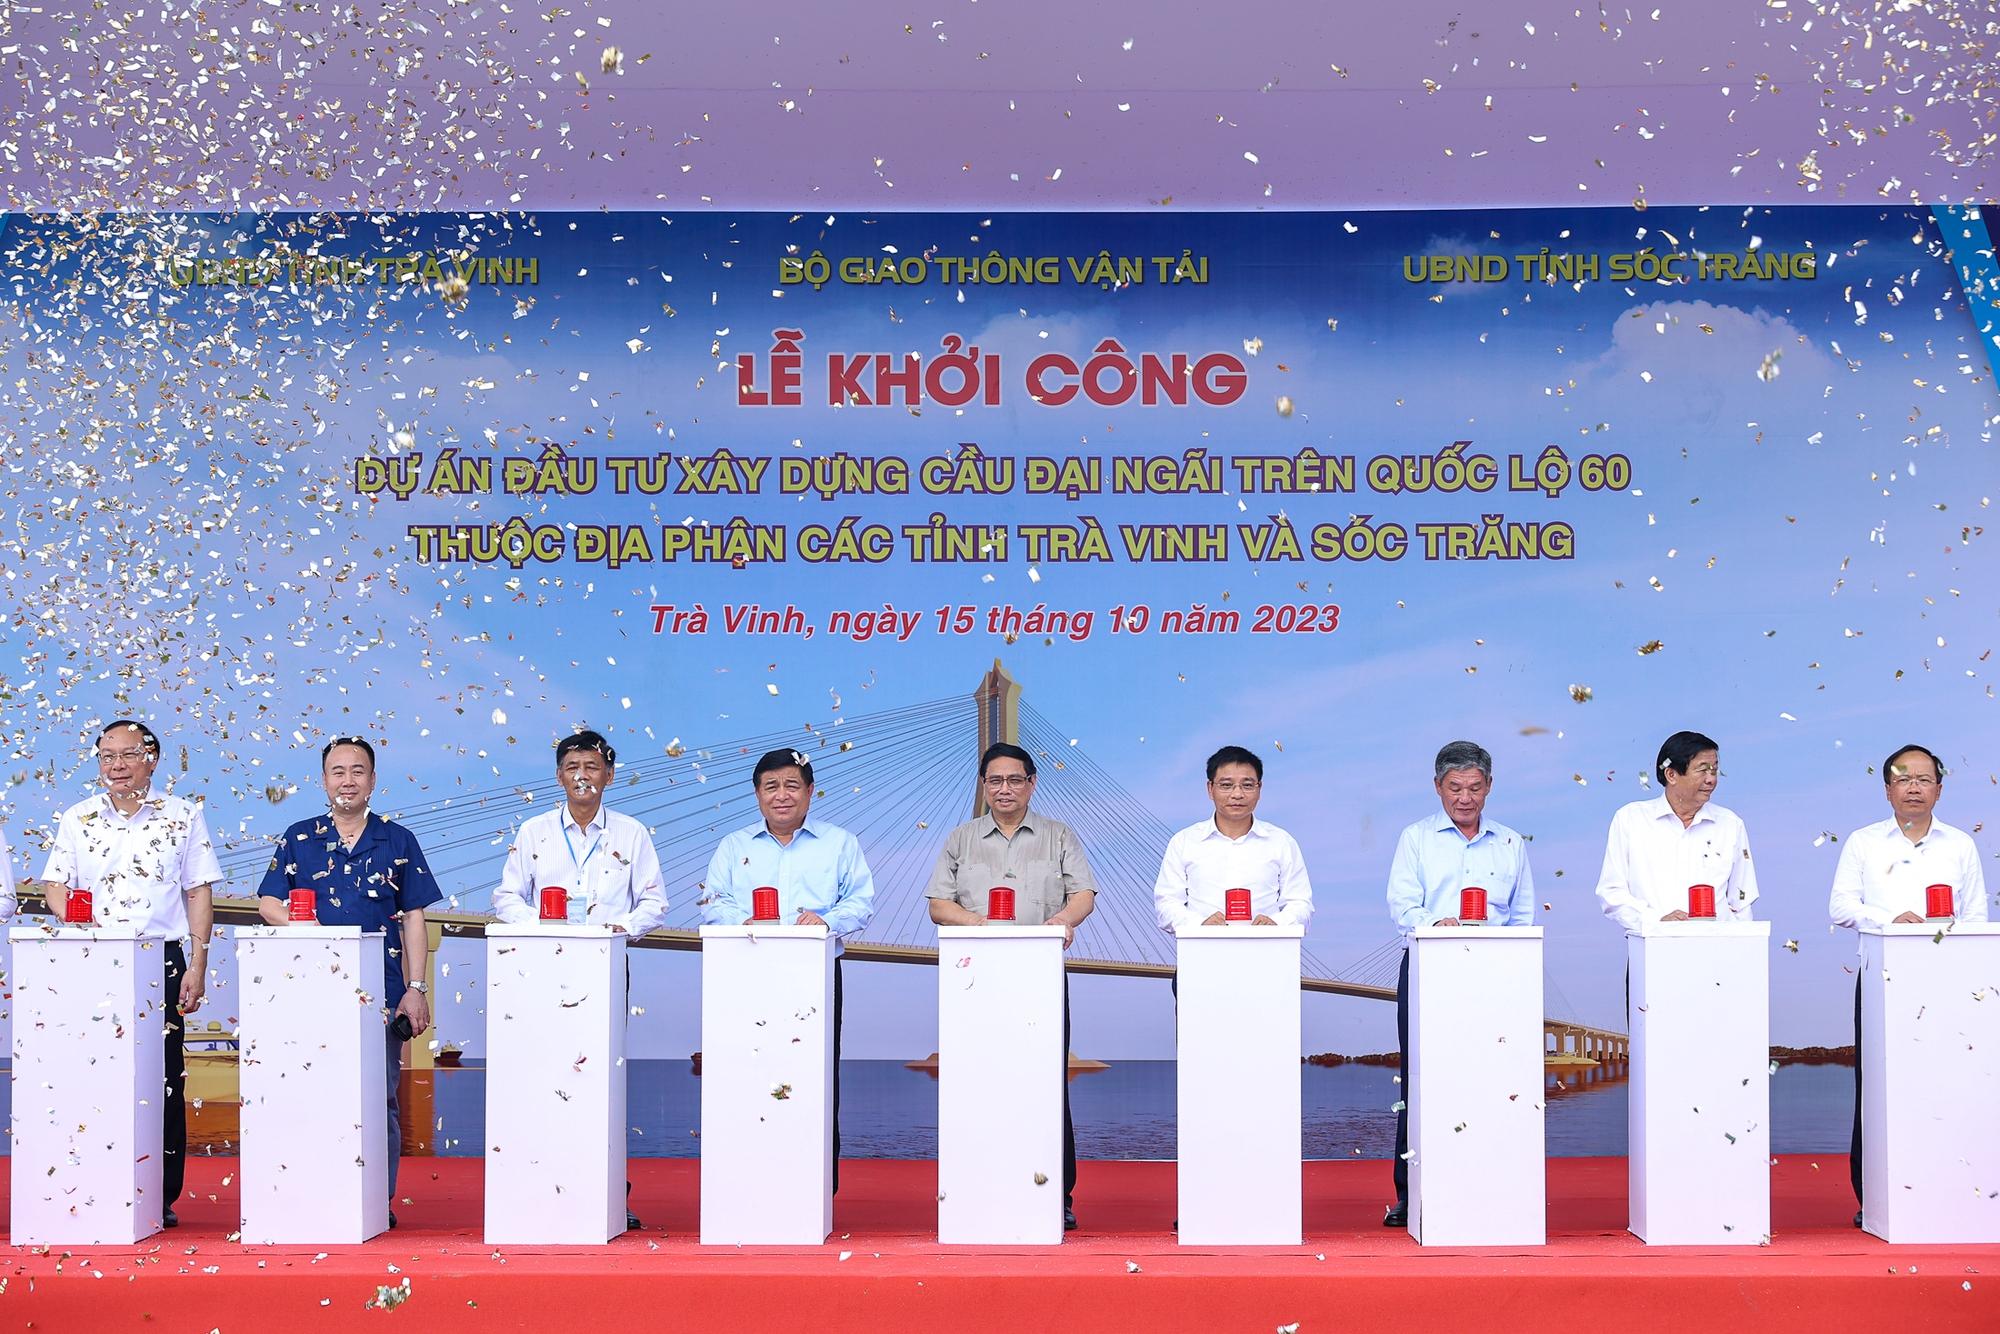 Thủ tướng Phạm Minh Chính và các đại biểu bấm nút khởi công dự án xây dựng cầu Đại Ngãi - Ảnh: VGP/Nhật Bắc